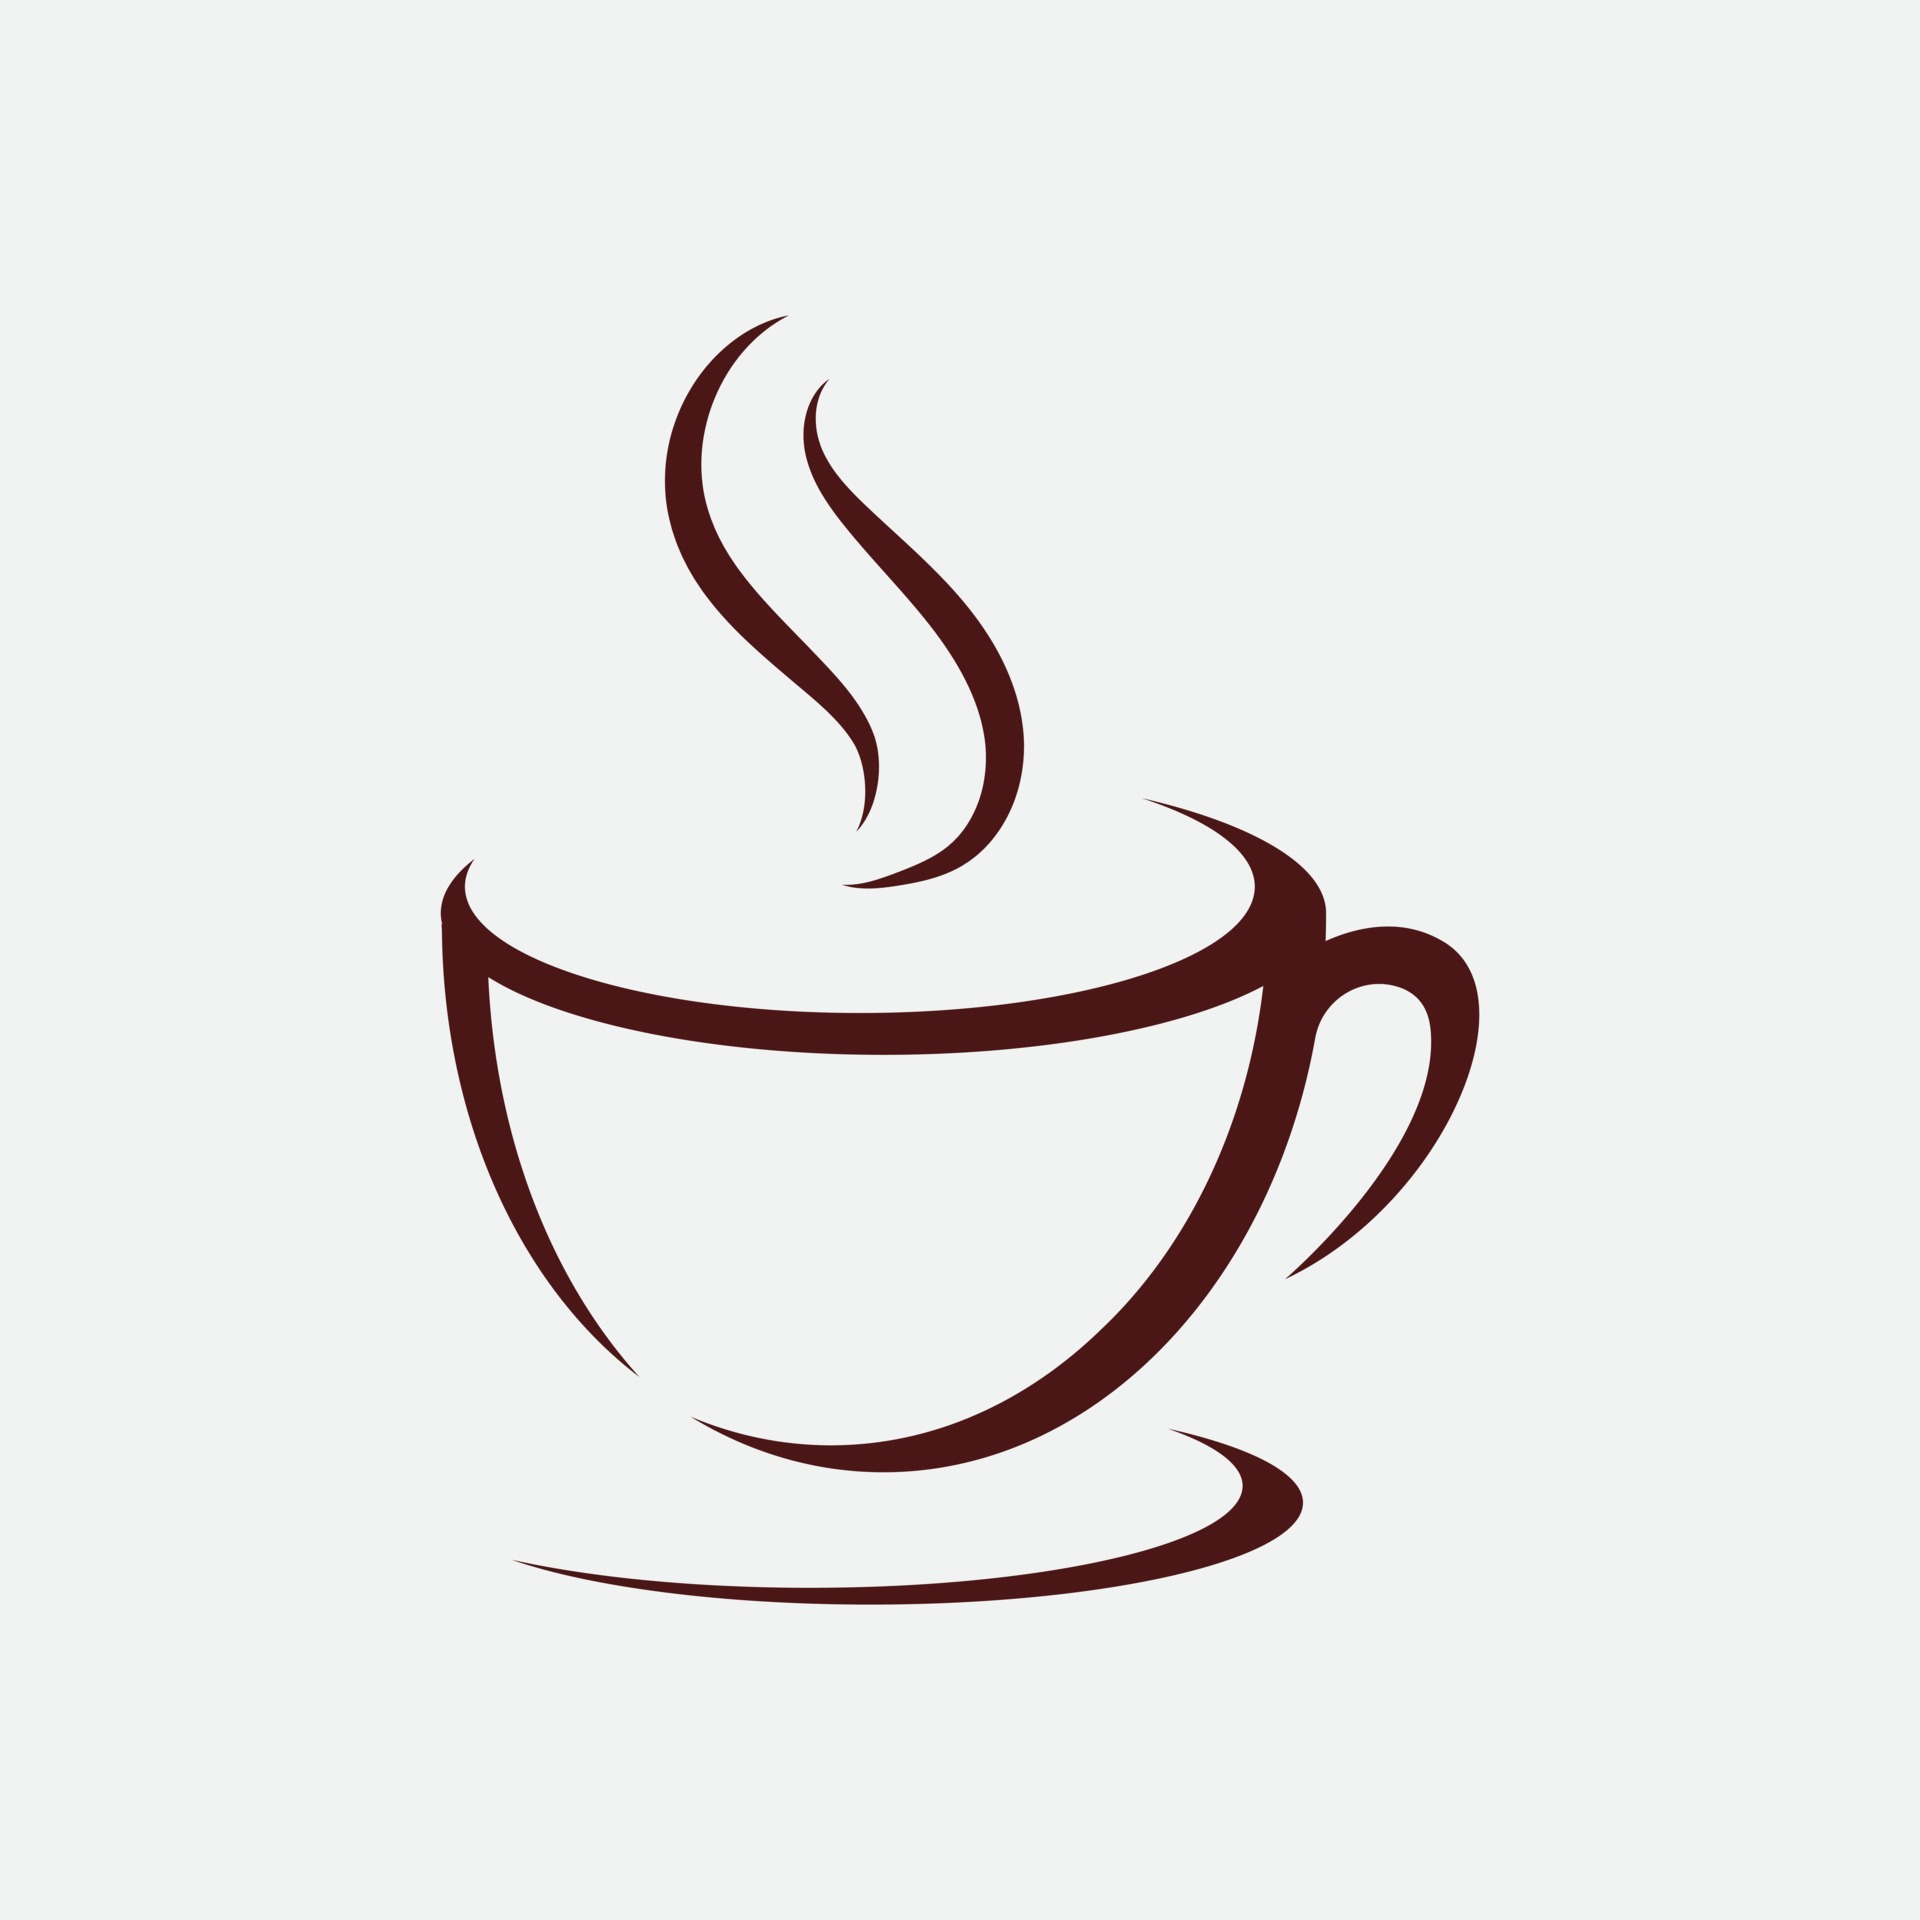 Tổng hợp 500+ coffee logo designs sang trọng và chuyên nghiệp nhất